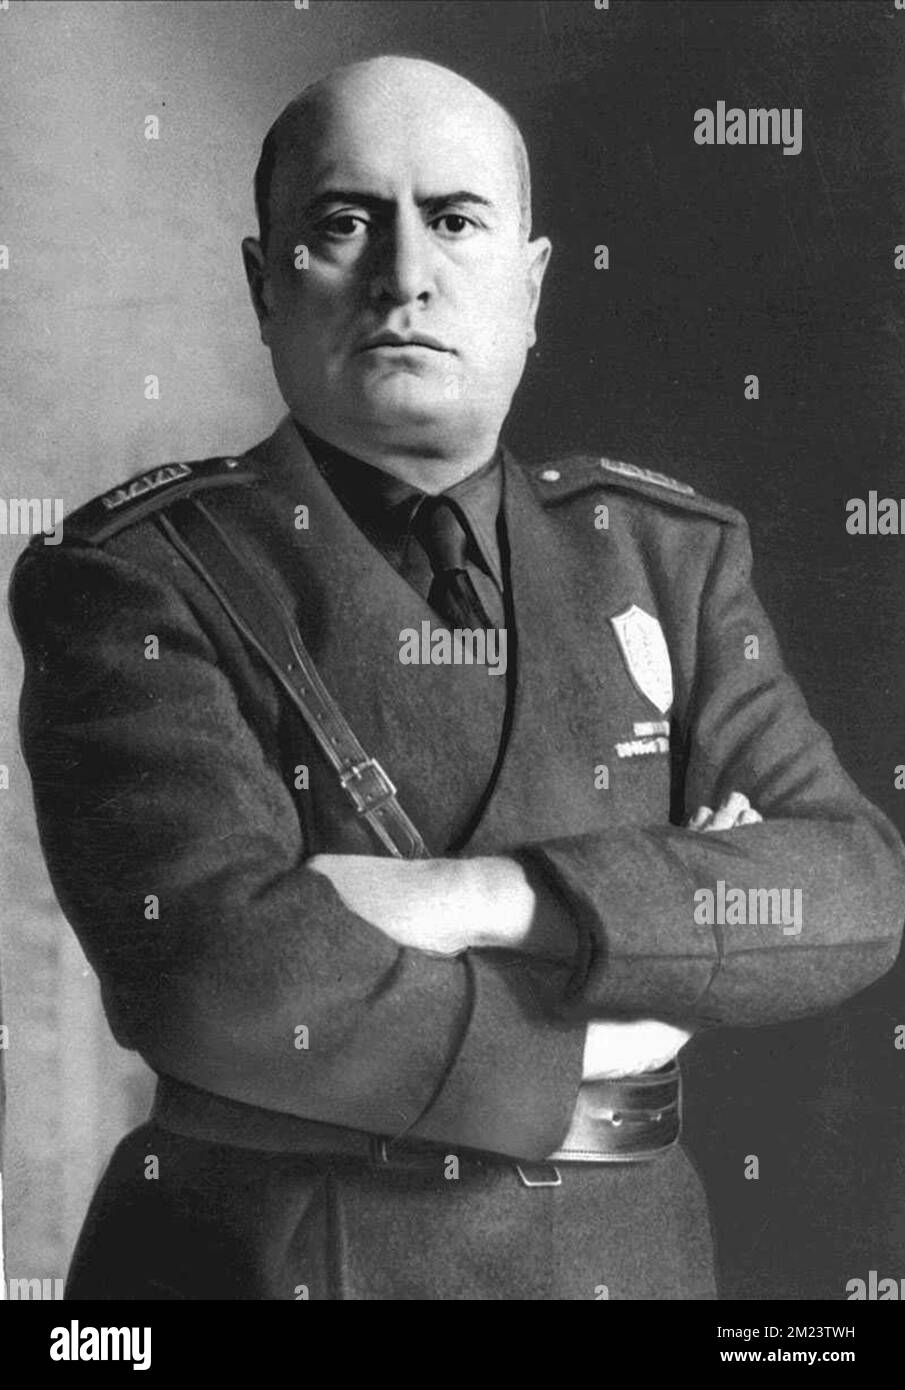 Mussolini, Benito Mussolini, Benito Amilcare Andrea Mussolini (1883 – 1945) politicien italien qui a fondé et dirigé le Parti national fasciste. Il a été Premier ministre de l'Italie de 1922 jusqu'à son dépôt en 1943, et 'Duce' du fascisme italien de l'établissement des fasces italiens de combat en 1919 jusqu'à son exécution en 1945 par des partisans italiens. Banque D'Images